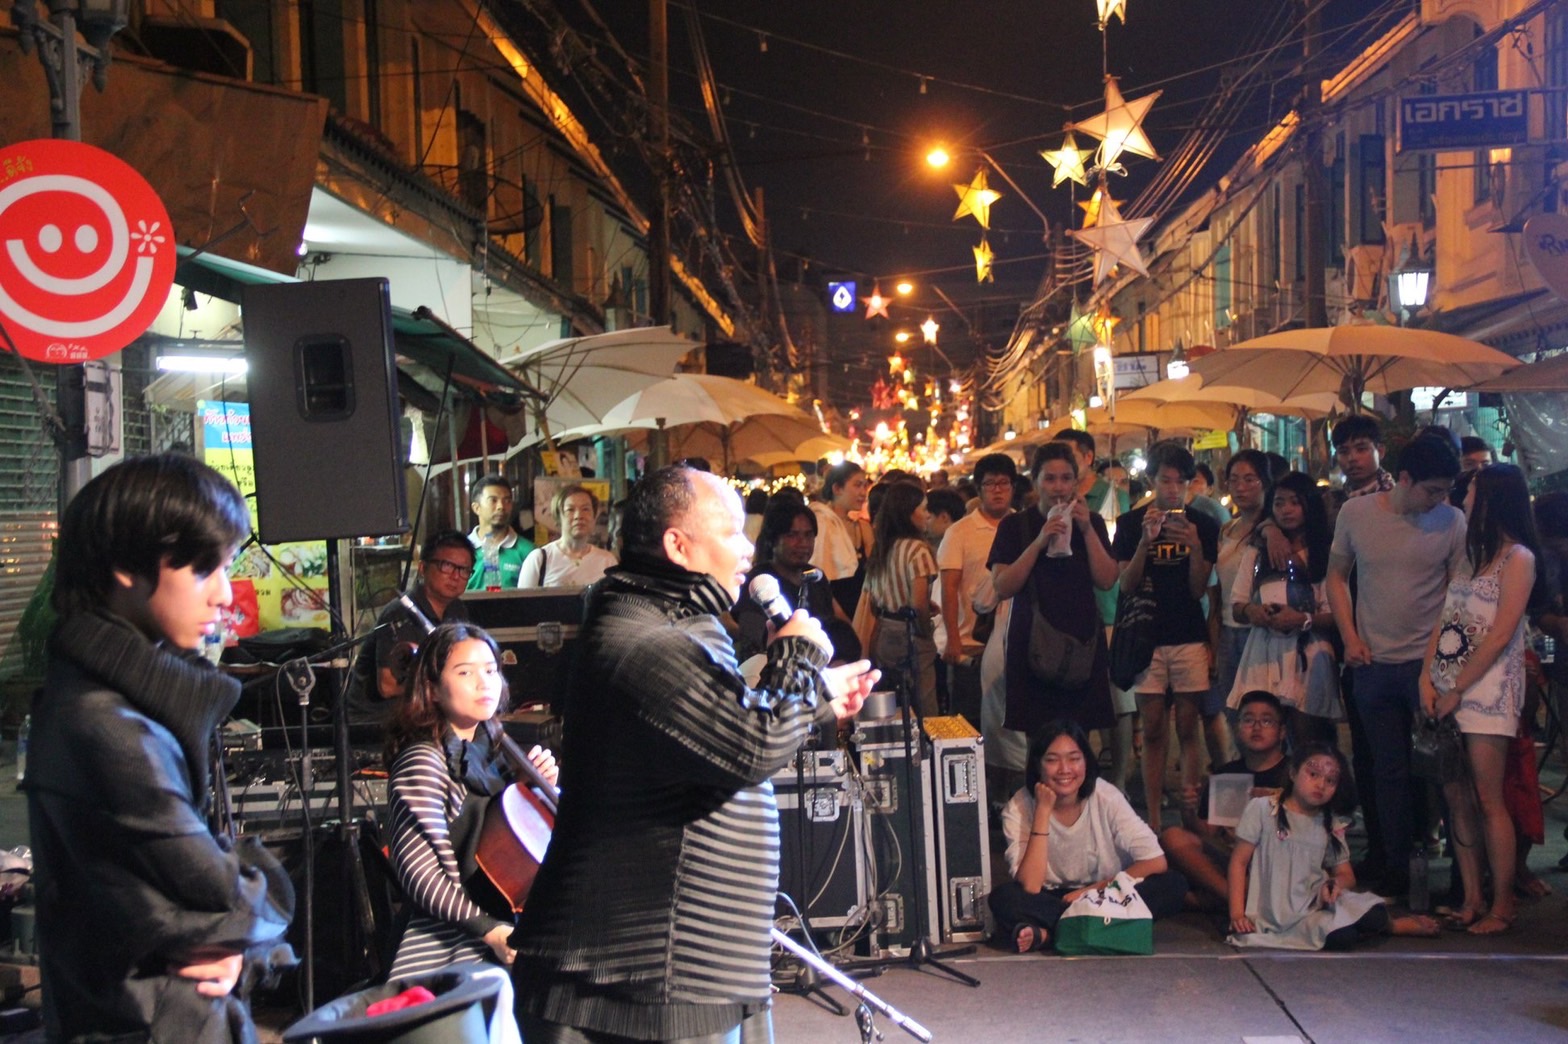 สามแพร่ง Face Street Performance เทศกาลศิลปะชุมชน Arts & Community Festival VK.Vich Vichayut Kanungchoti วิชยุตม์ คนึงโชติ มายากล รับแสดงมายากล Magic Class รับสอนมายากล มายากลเวที การแสดง Stage Magic แสดงวันเด็ก วันปีใหม่ วรรณศักดิ์ ศิริหล้า Wannasak Sirilar เล่านิทาน